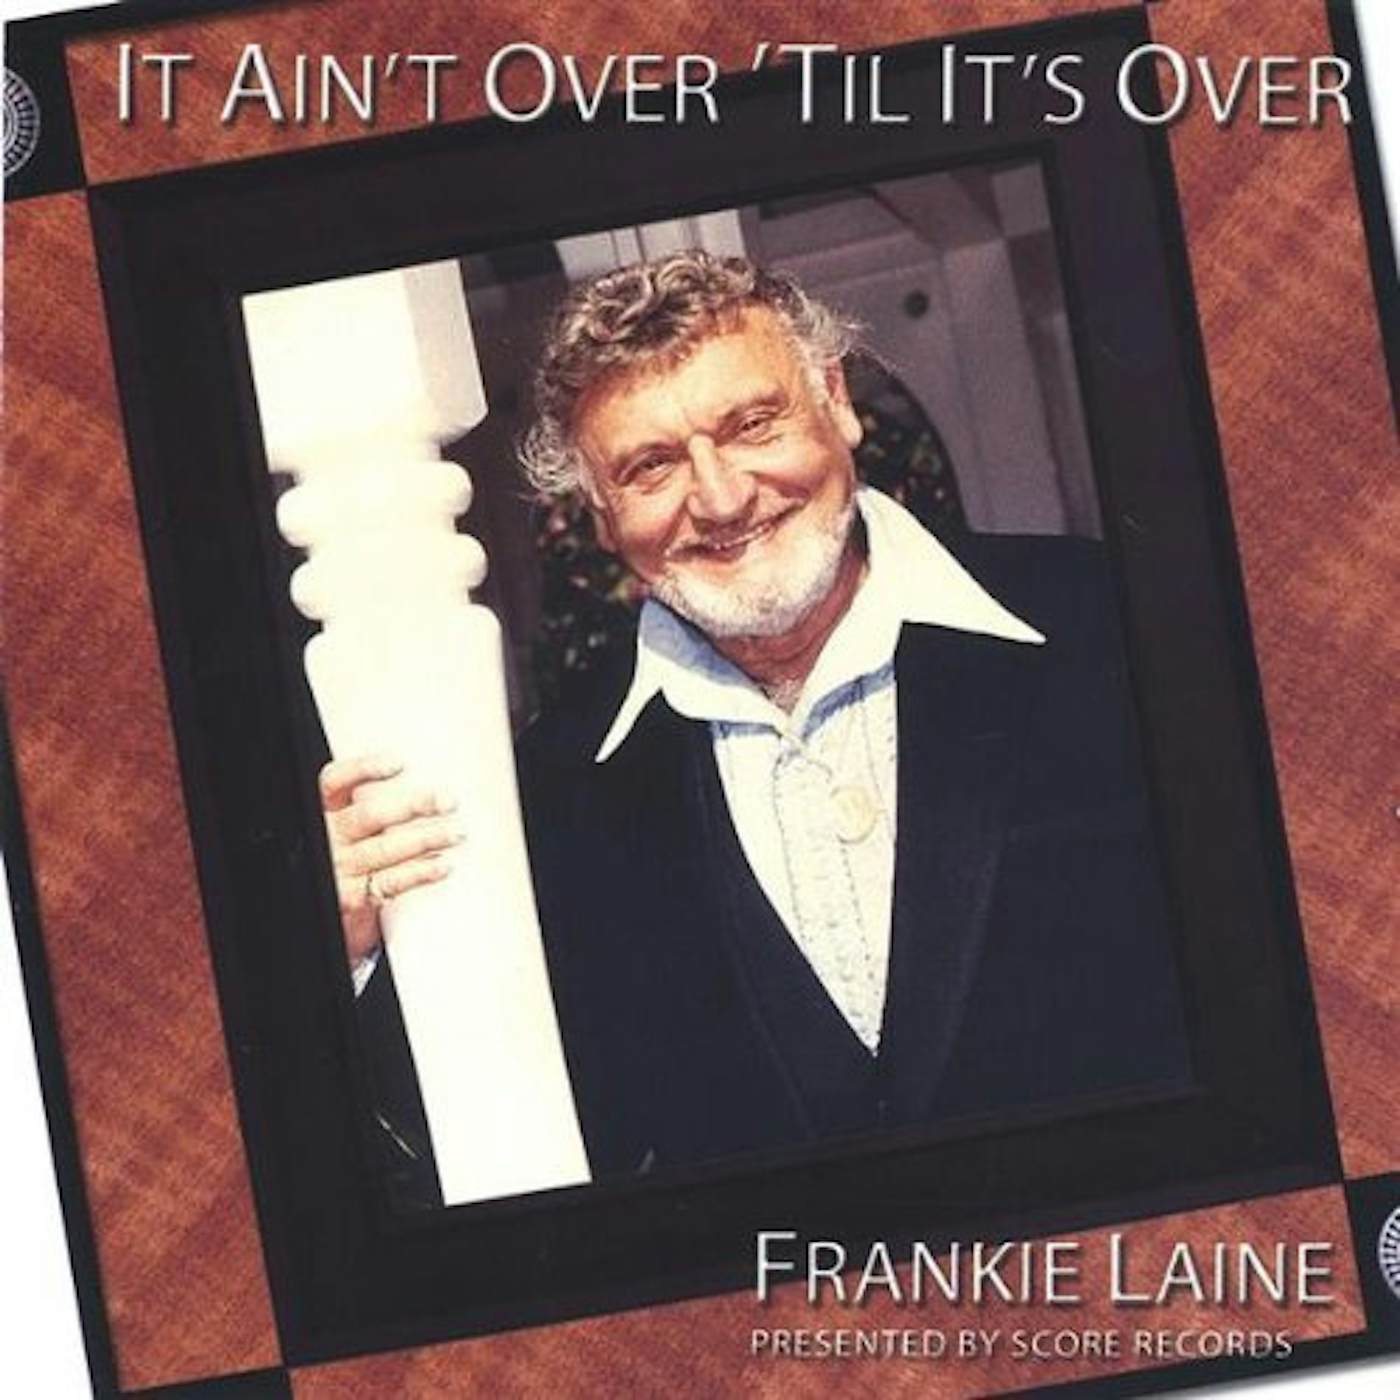 Frankie Laine NASHVILLE CONNECTION CD